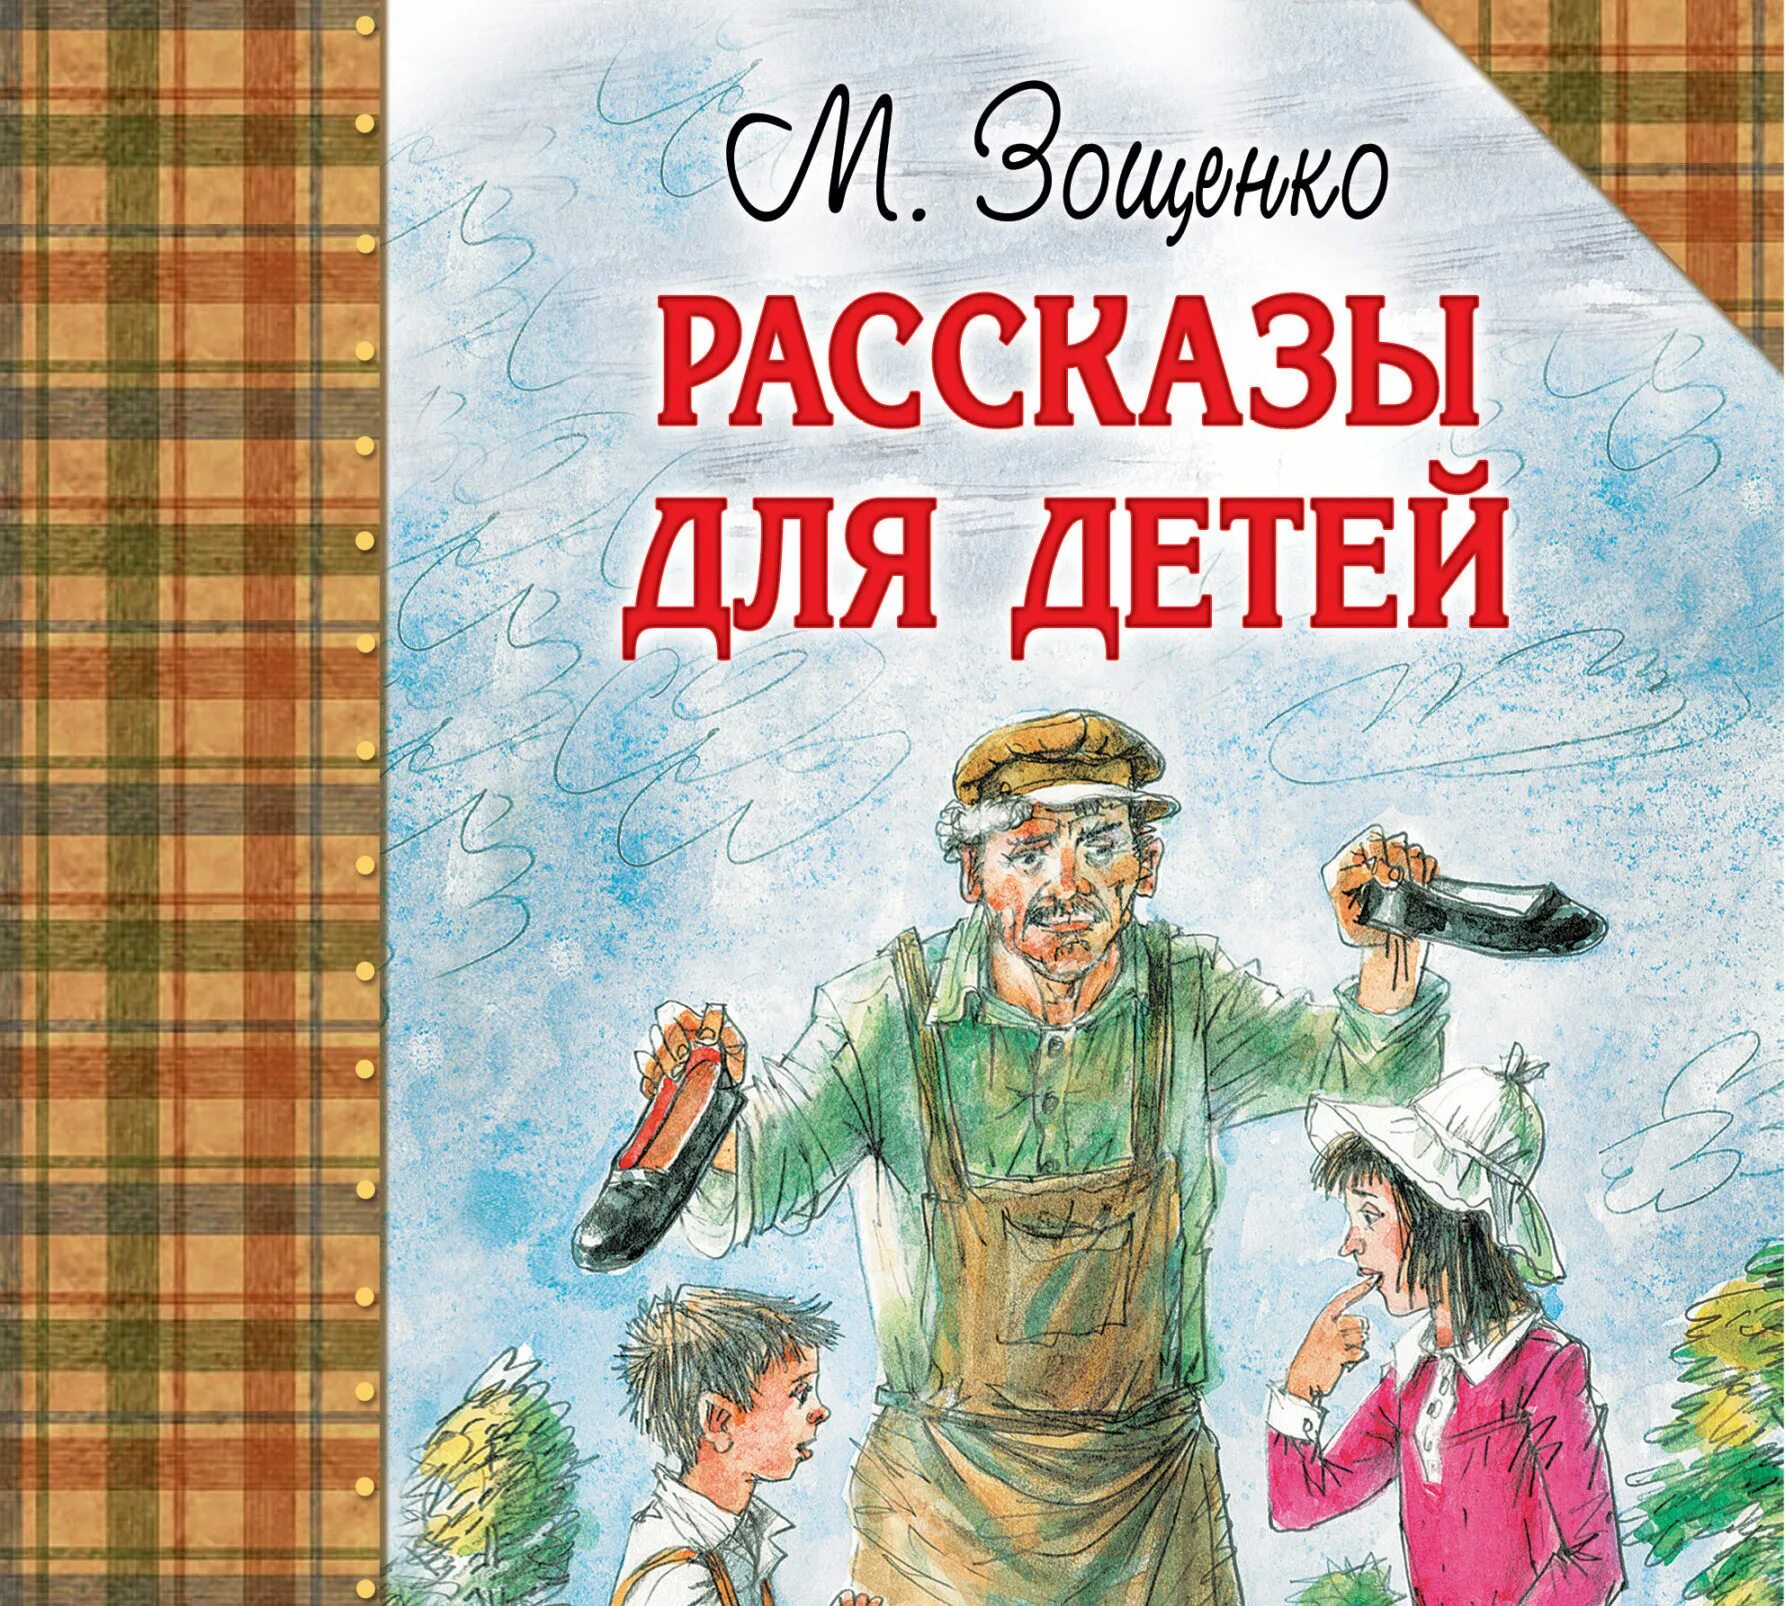 Рассказы писателя м зощенко. Зощенко м. рассказы для детей.